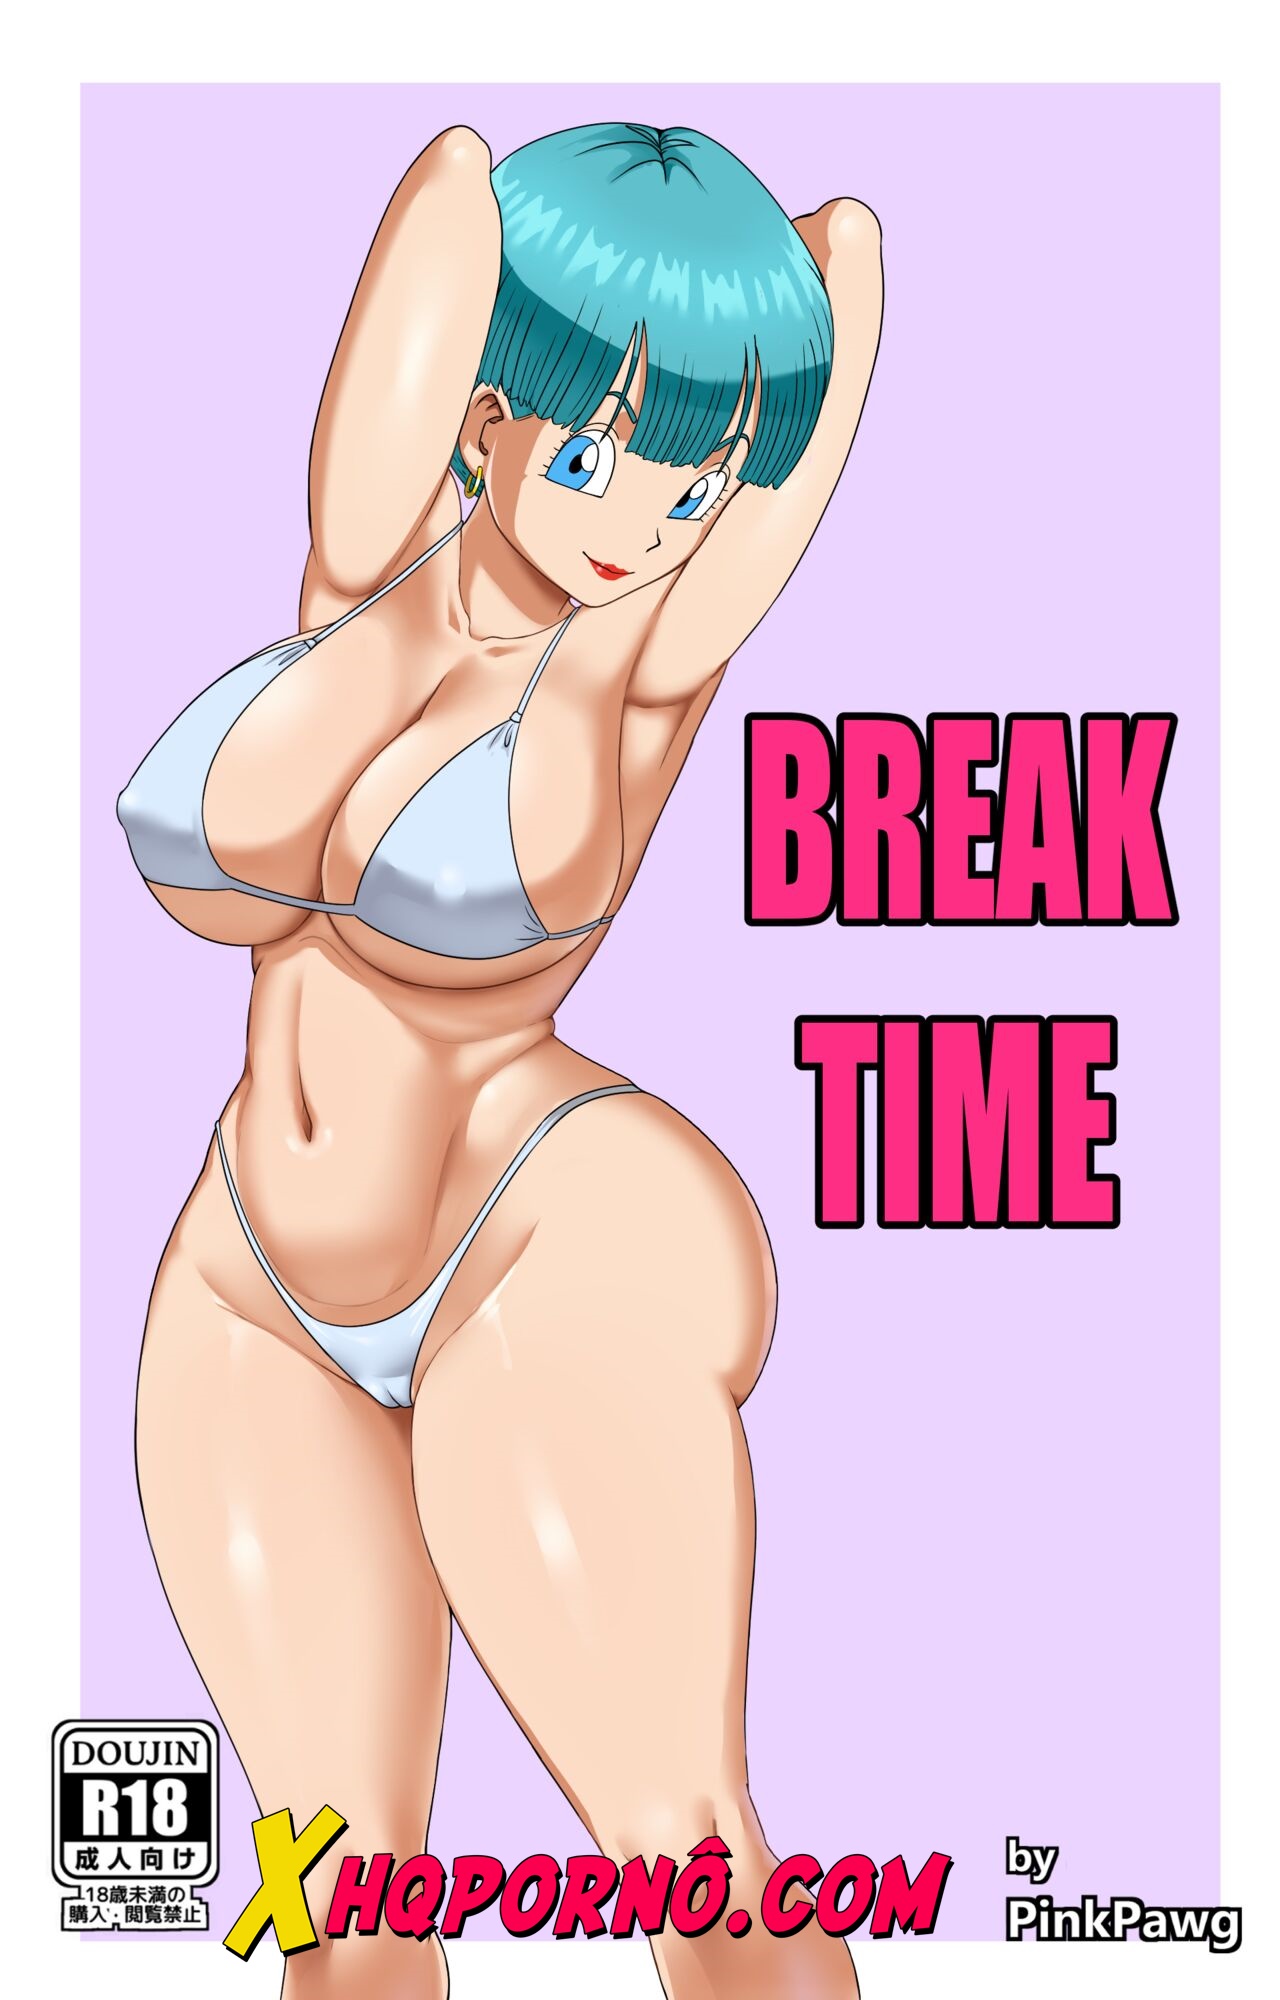 Break time – Dragon ball z